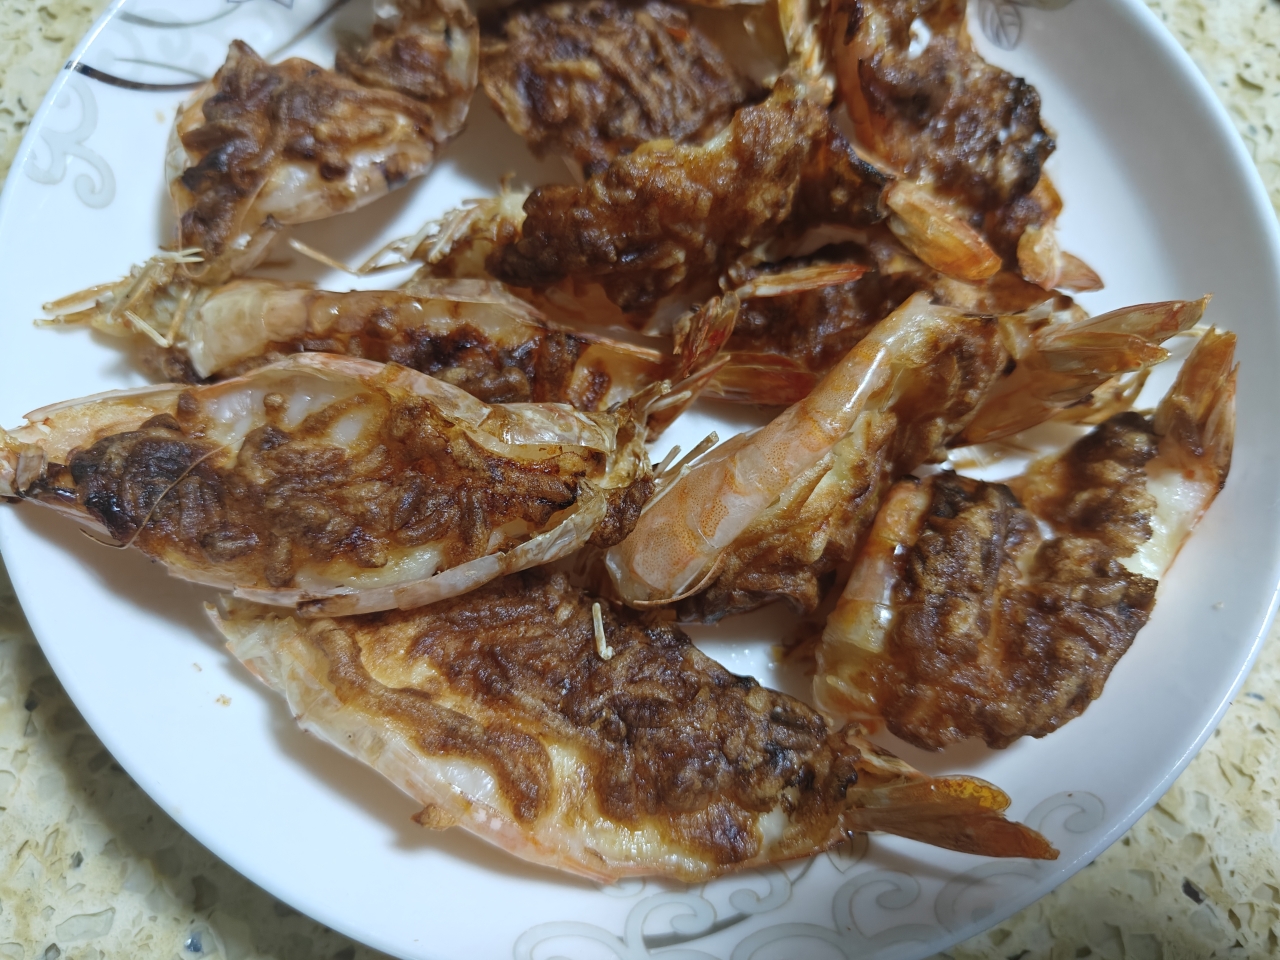 芝士沙拉酱焗大虾